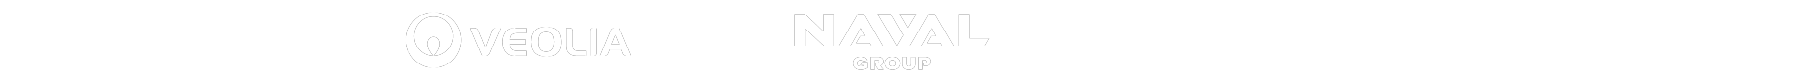 logo edf veolia naval group